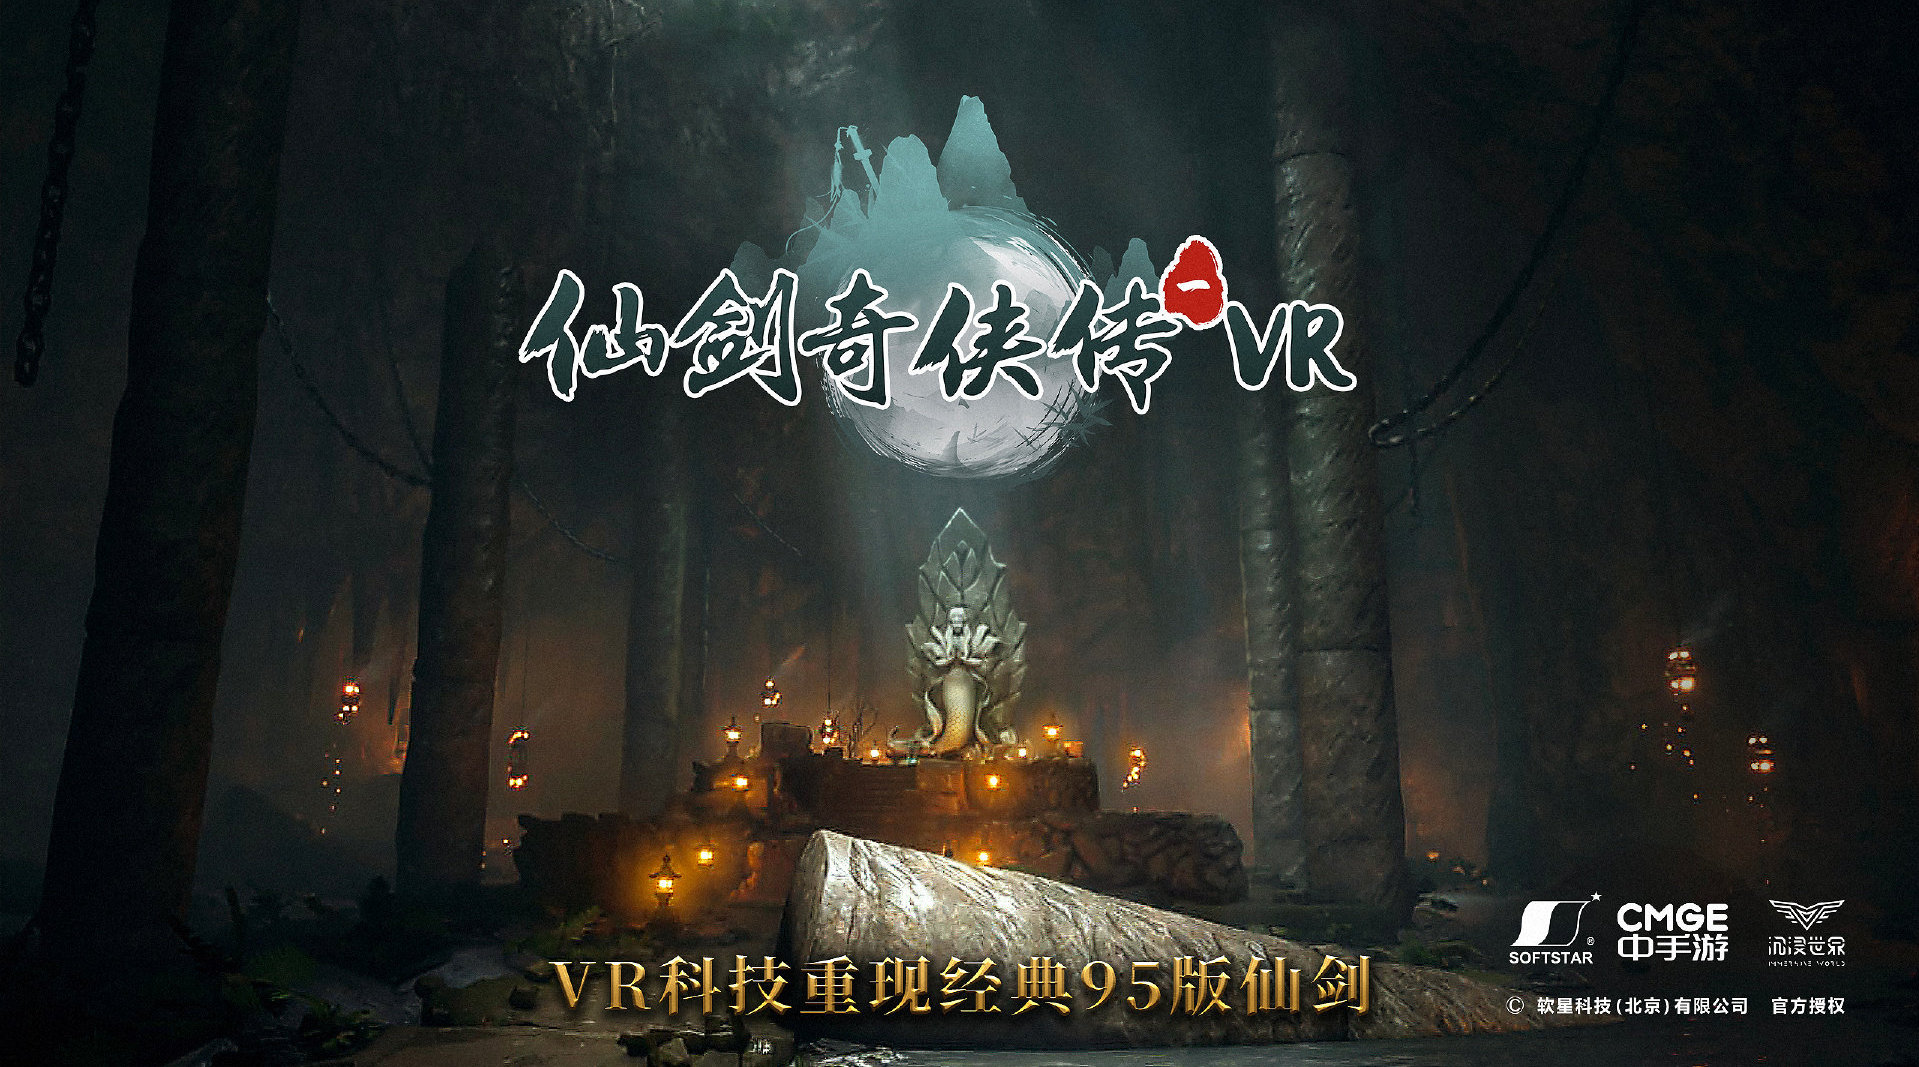 《仙剑奇侠传一 VR》7 月 15 日发布，用 VR 科技重现 95 版仙剑